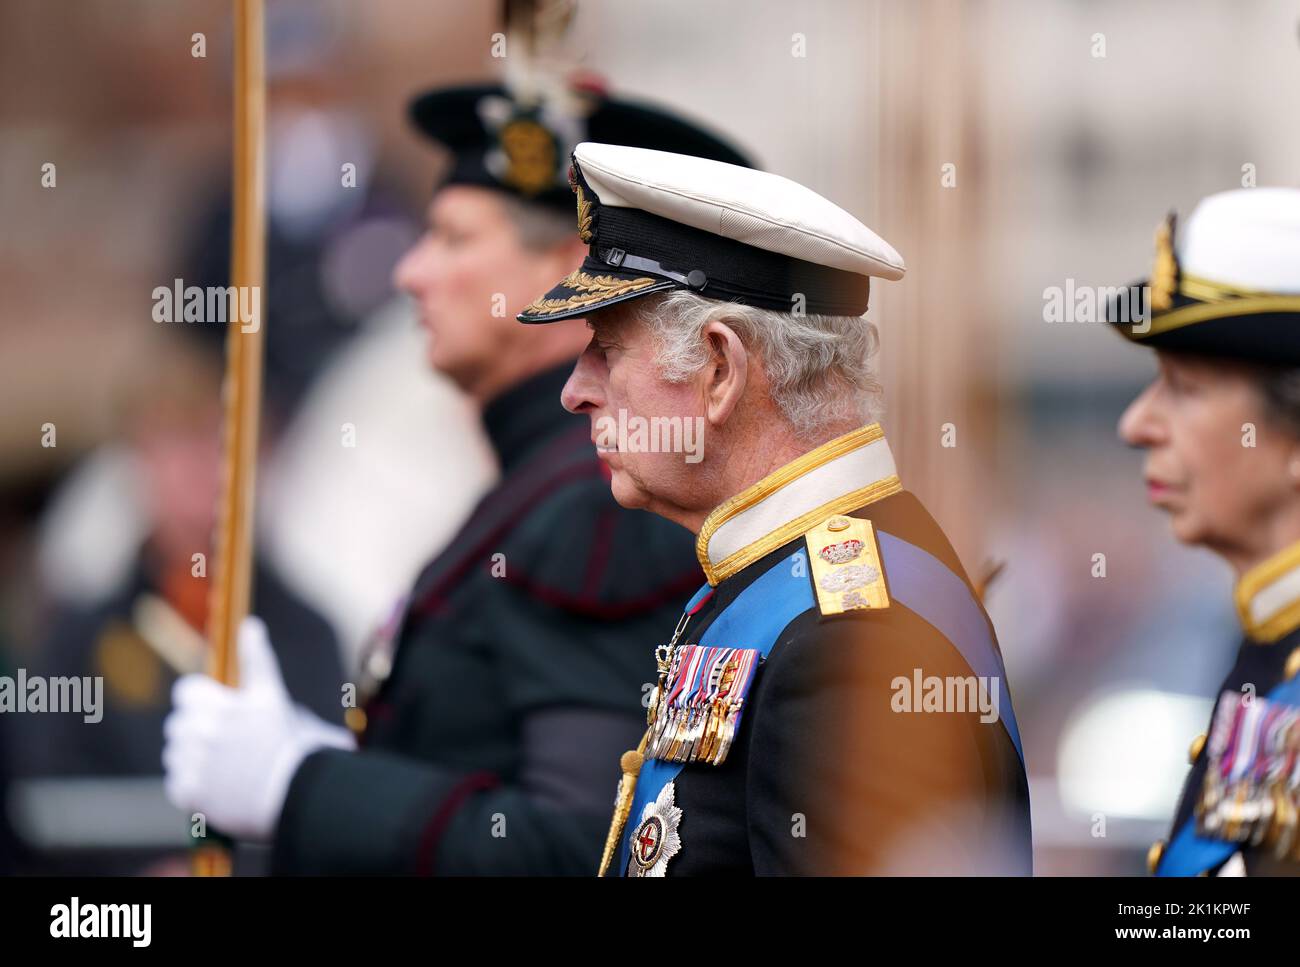 Le roi Charles III, dans la procession de cérémonie suivant son funérailles d'État à l'abbaye de Westminster, Londres. Date de la photo: Lundi 19 septembre 2022. Banque D'Images